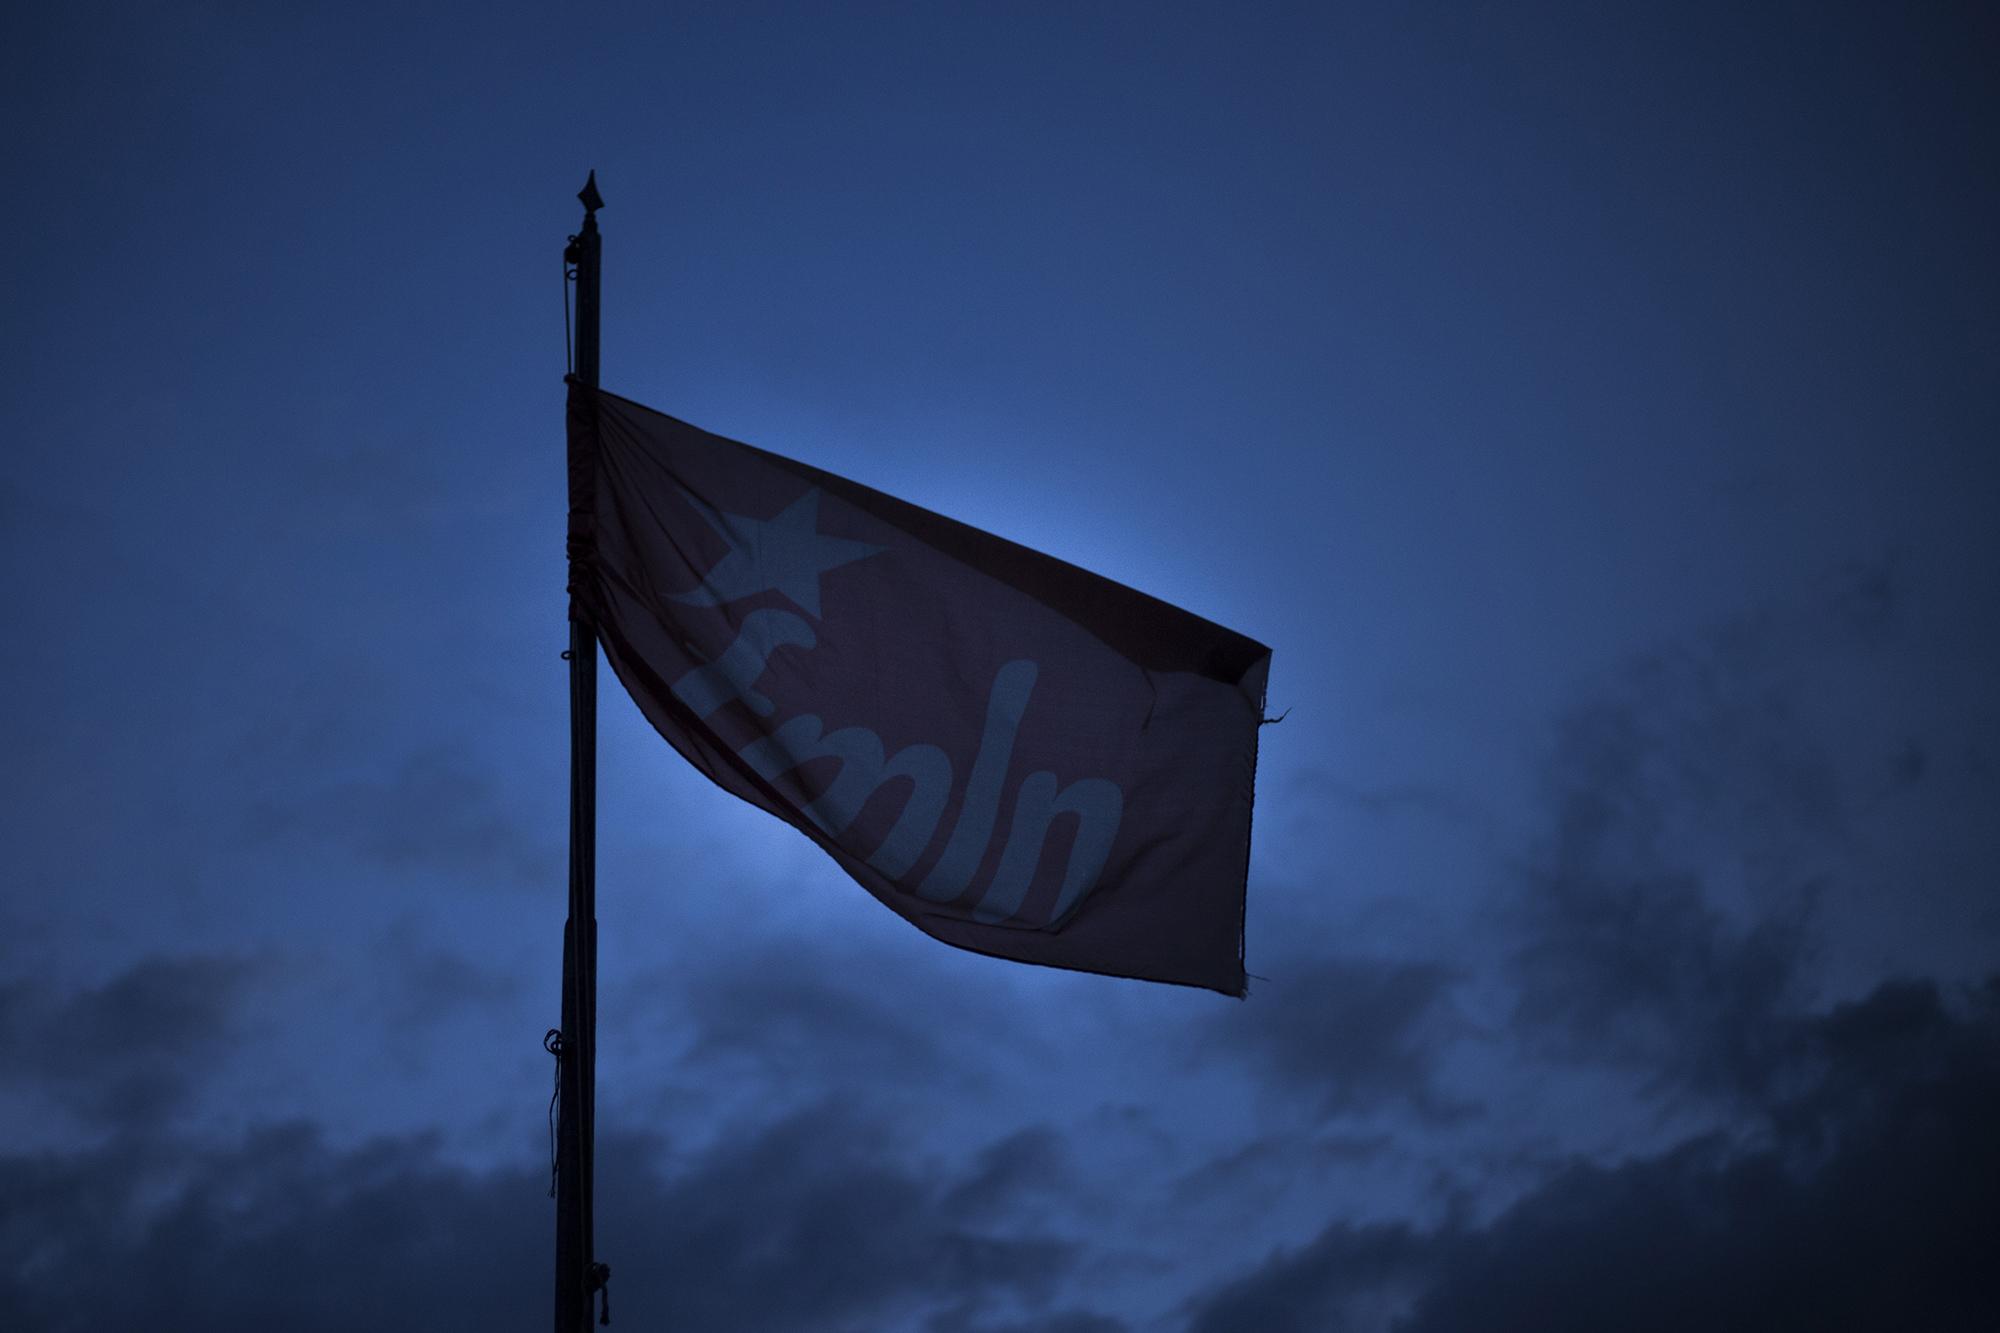 La bandera rota del FMLN ondea sobre las instalaciones de la sede central del partido, en la colonia Buenos Aires de San Salvador. Foto: Víctor Peña.